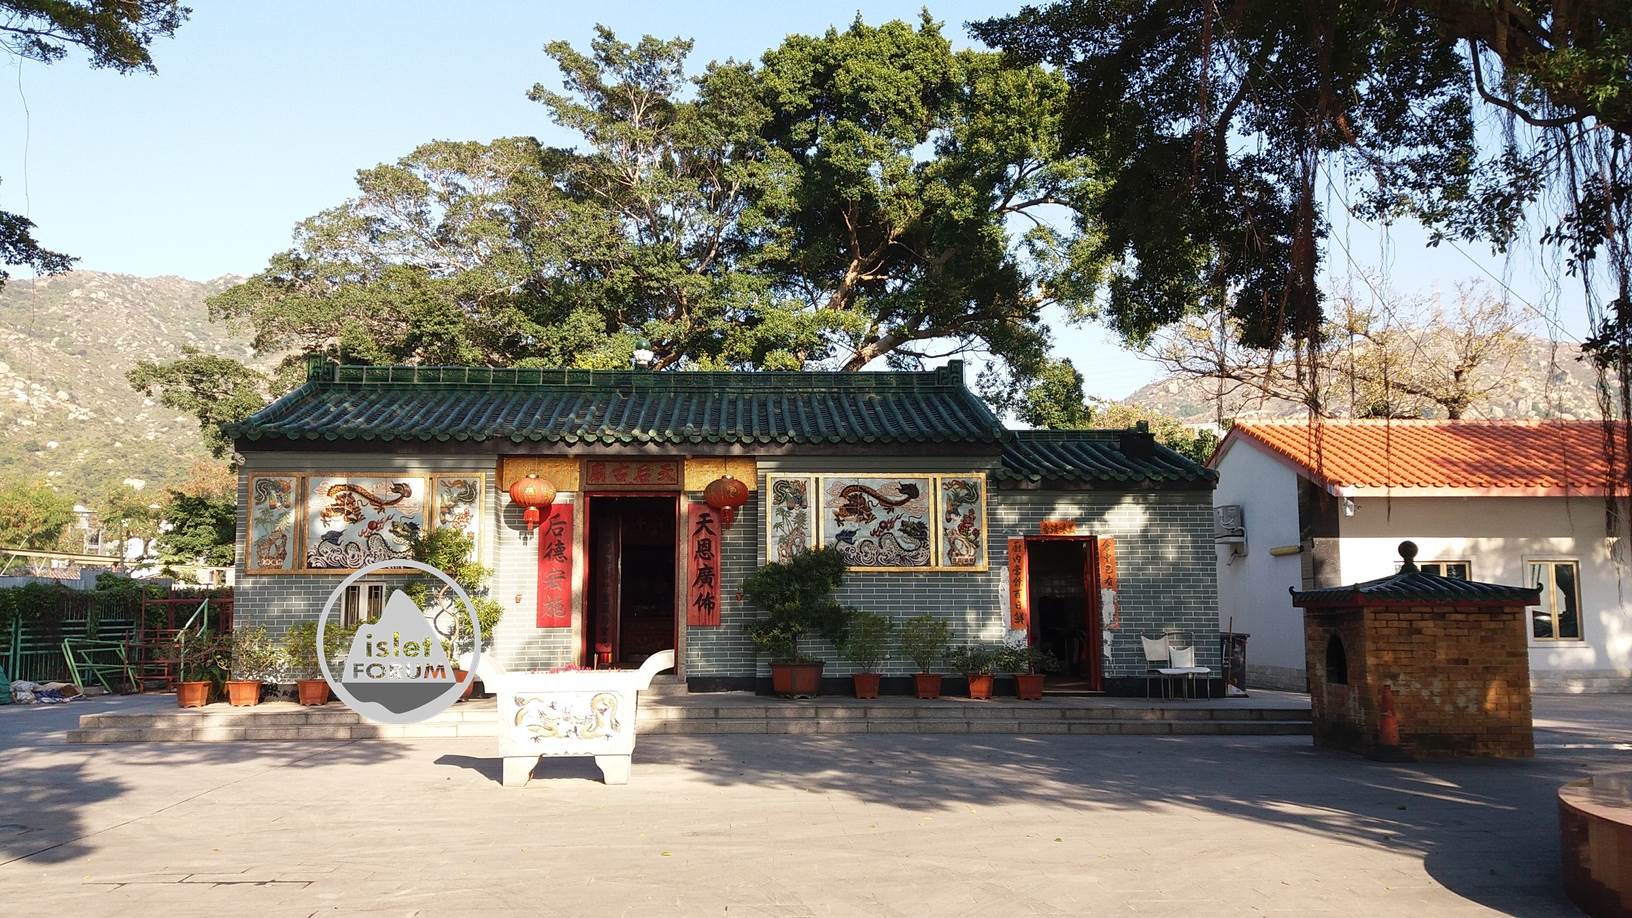 龍鼓灘天后廟lung kwu tan tin hau temple (1).jpg